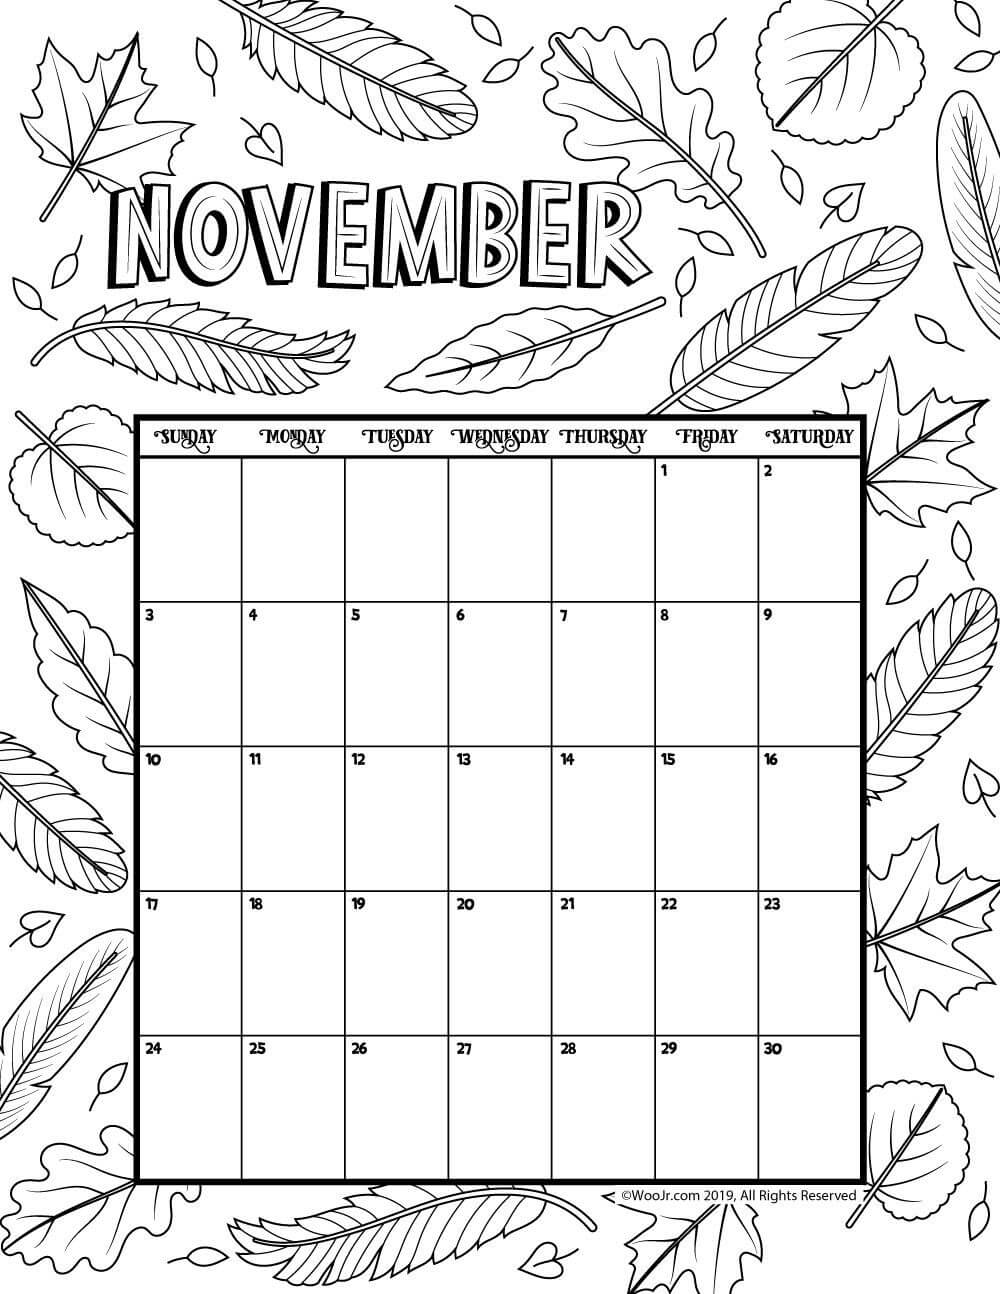 November Coloring Calendar 2019